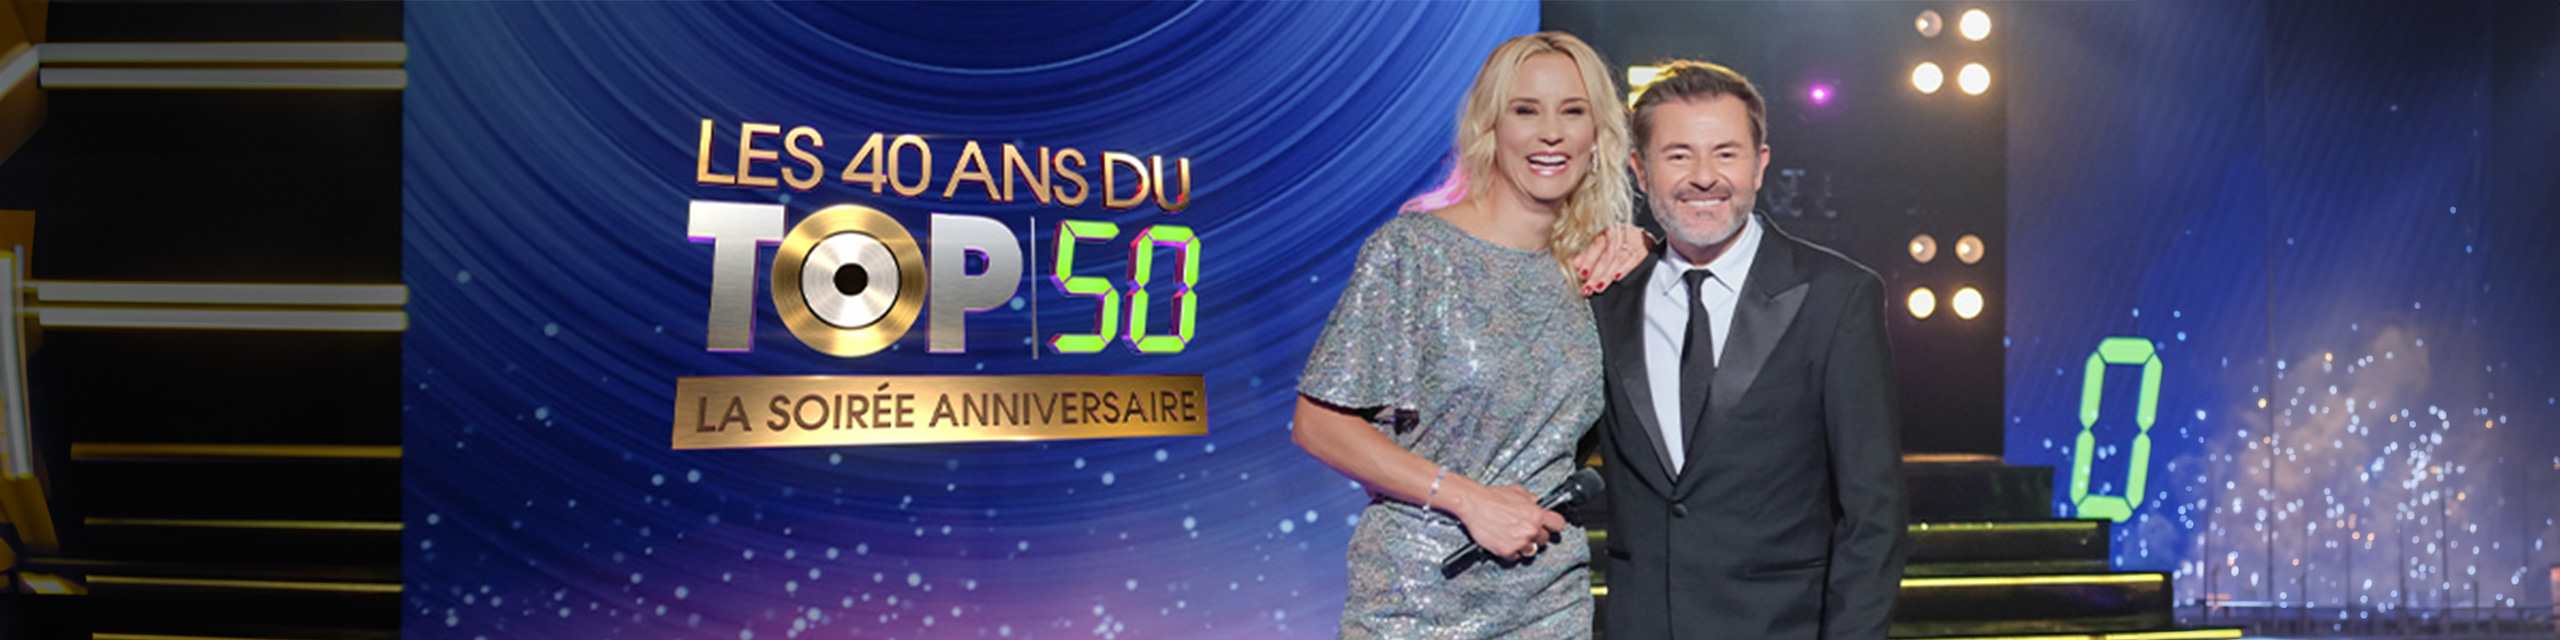 Les 40 ans du Top 50 : la soirée anniversaire